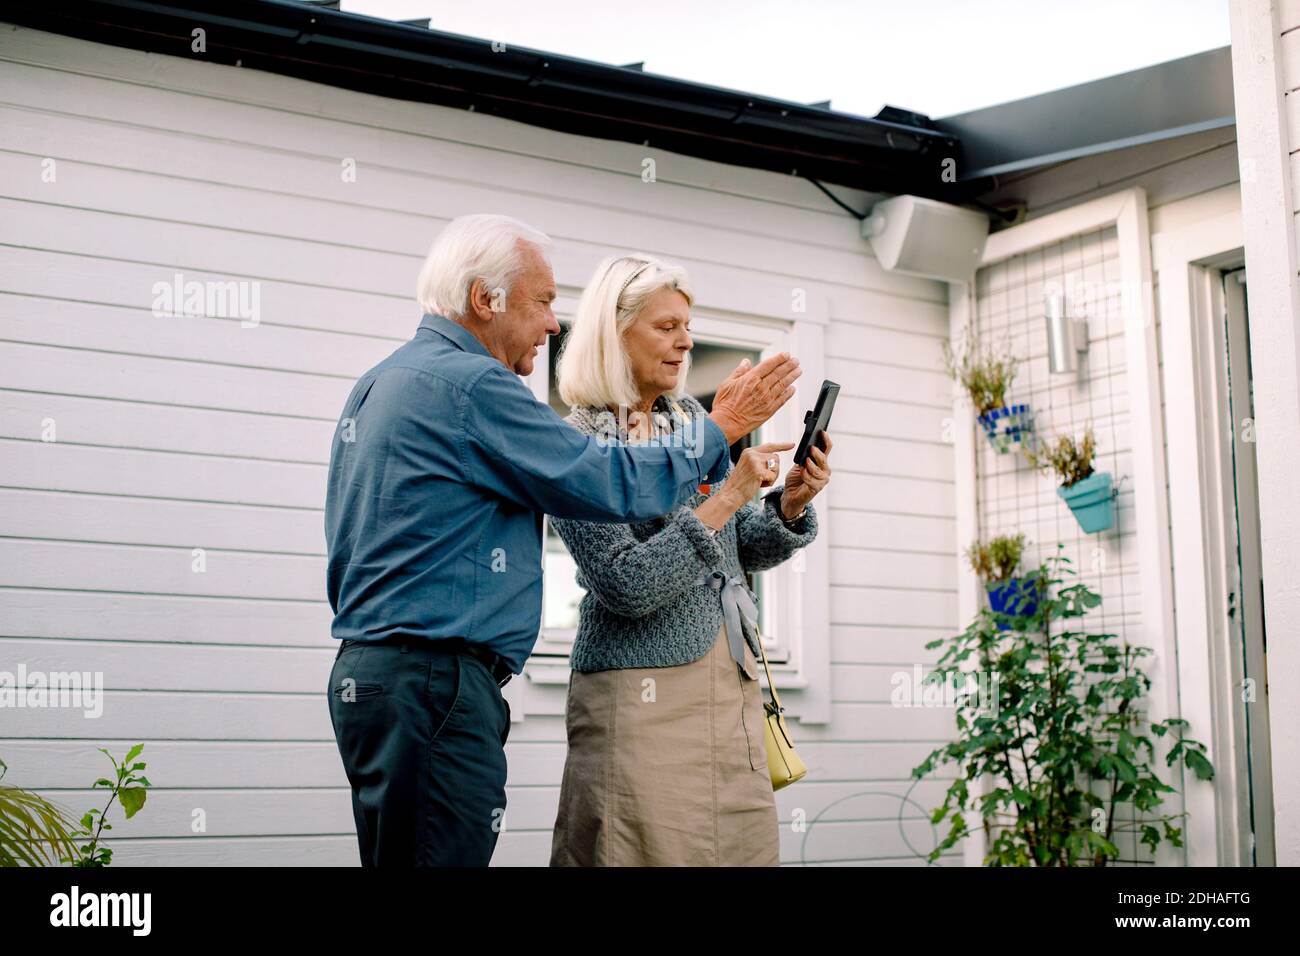 Älterer Mann im Gespräch mit einer Frau, die das Mobiltelefon gegen das Haus hält Stockfoto